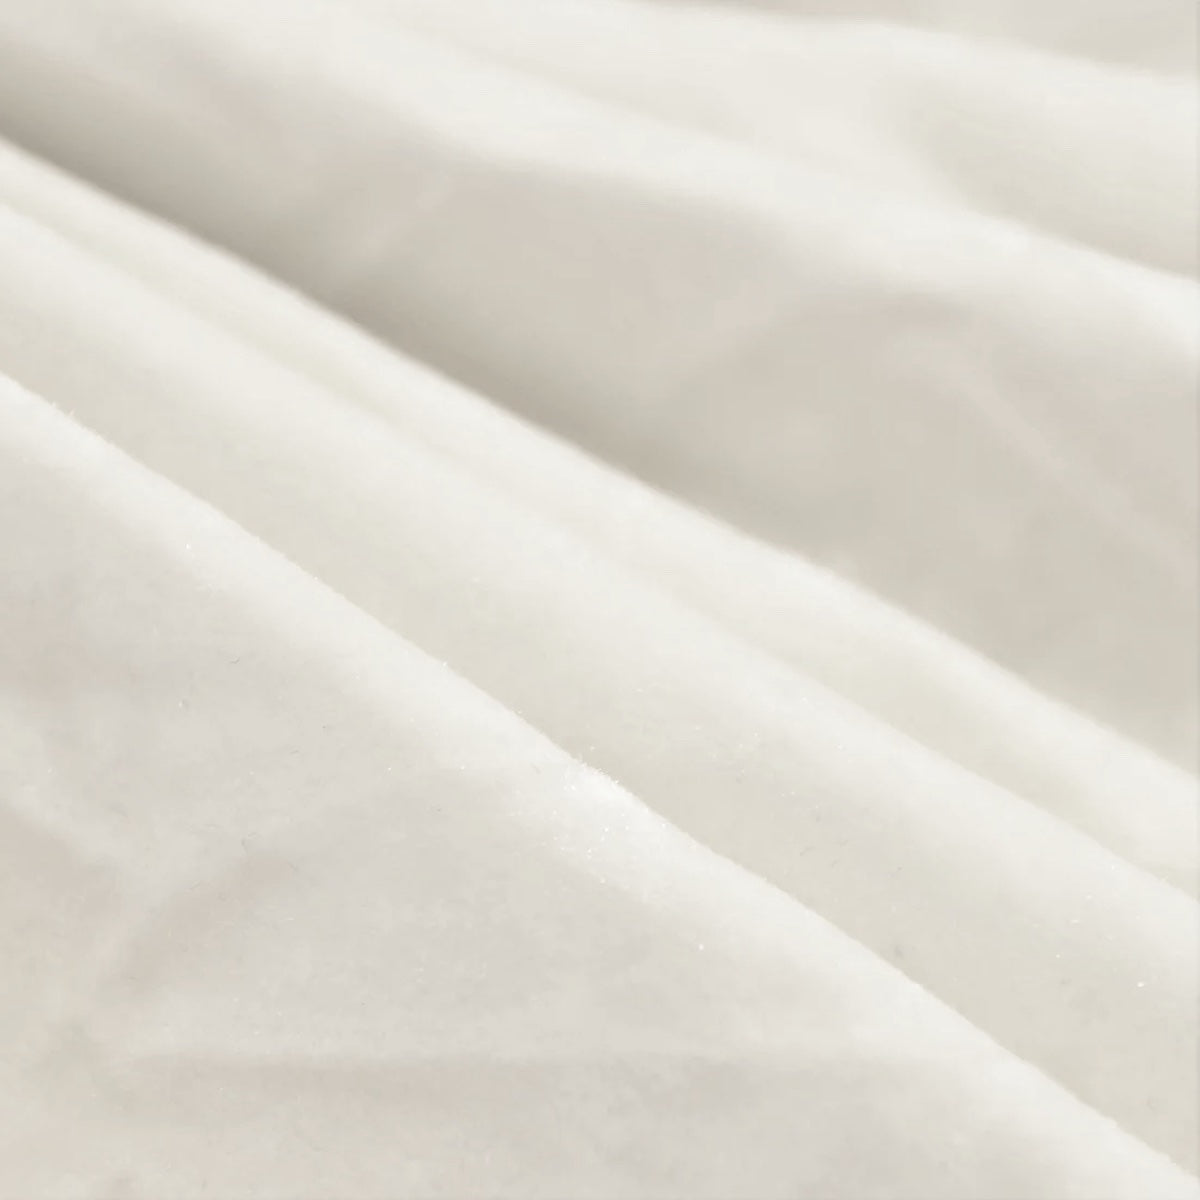 White Crushed Velvet Flocking Fabric - Fashion Fabrics LLC